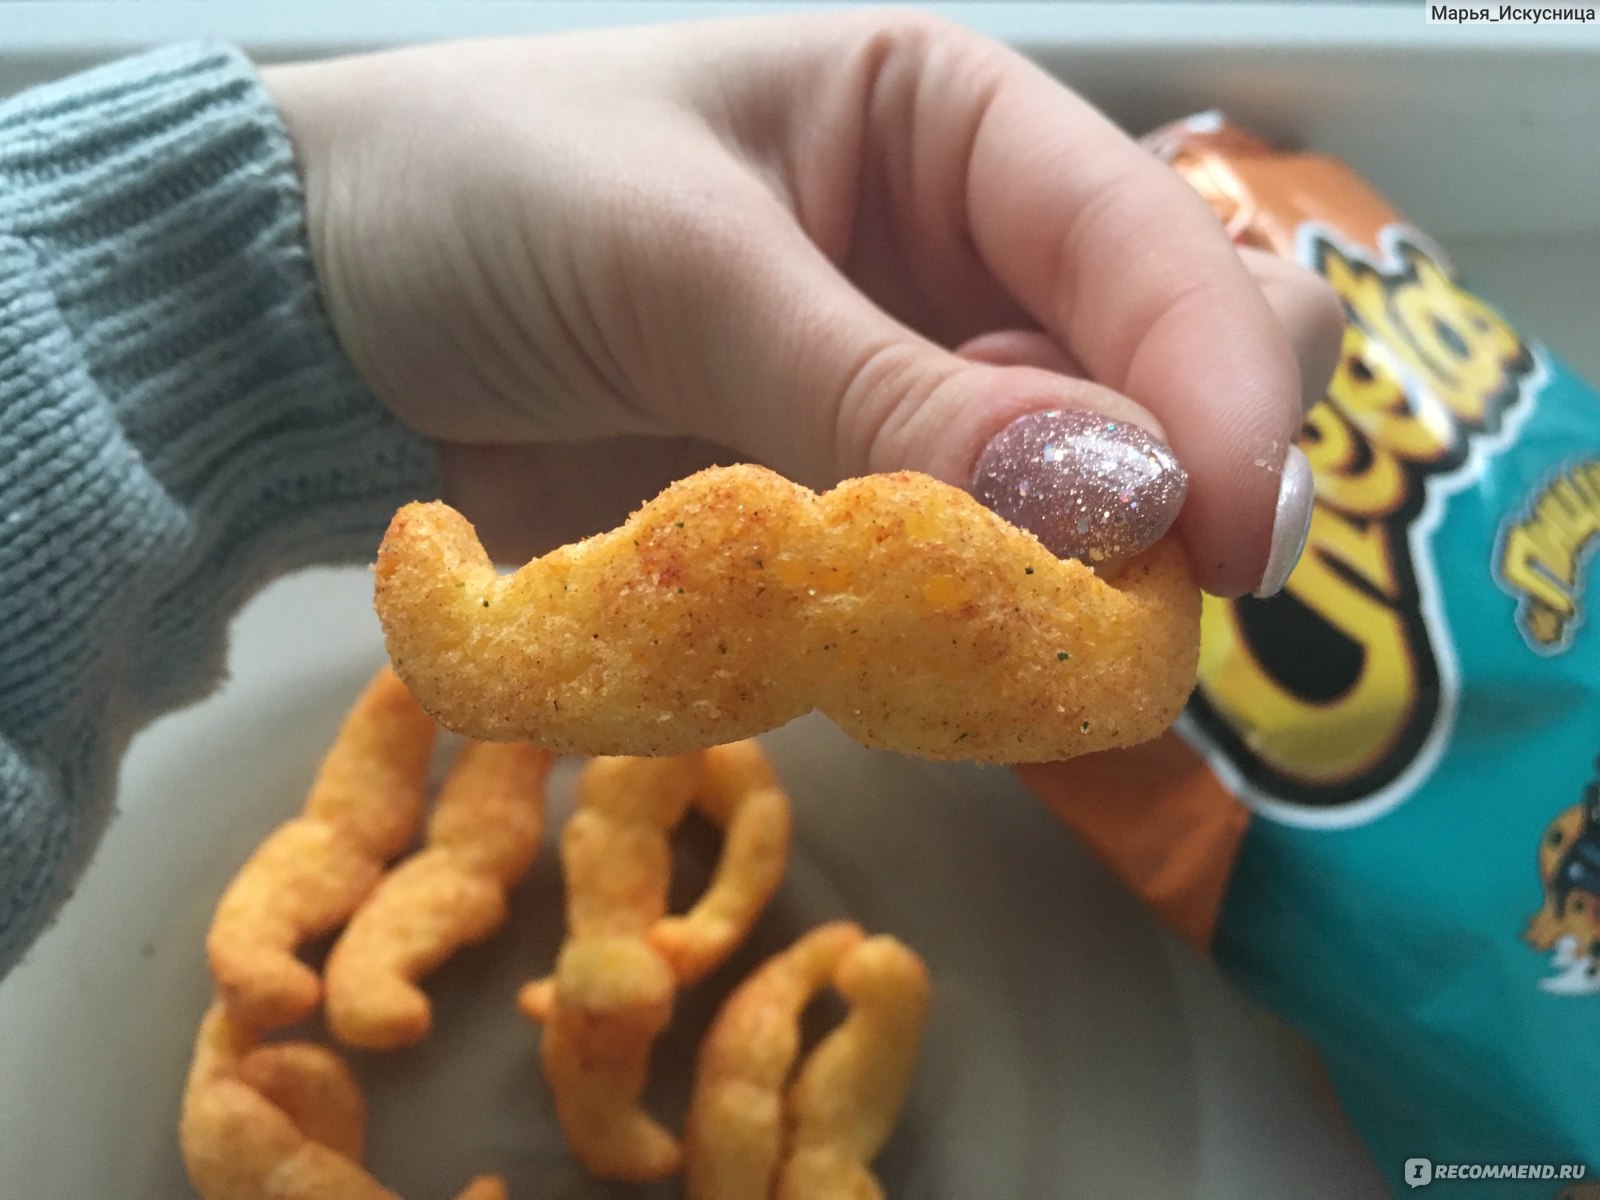 Cheetos со вкусом 🍕 далеко не новинка да и вкус уже не тот! 